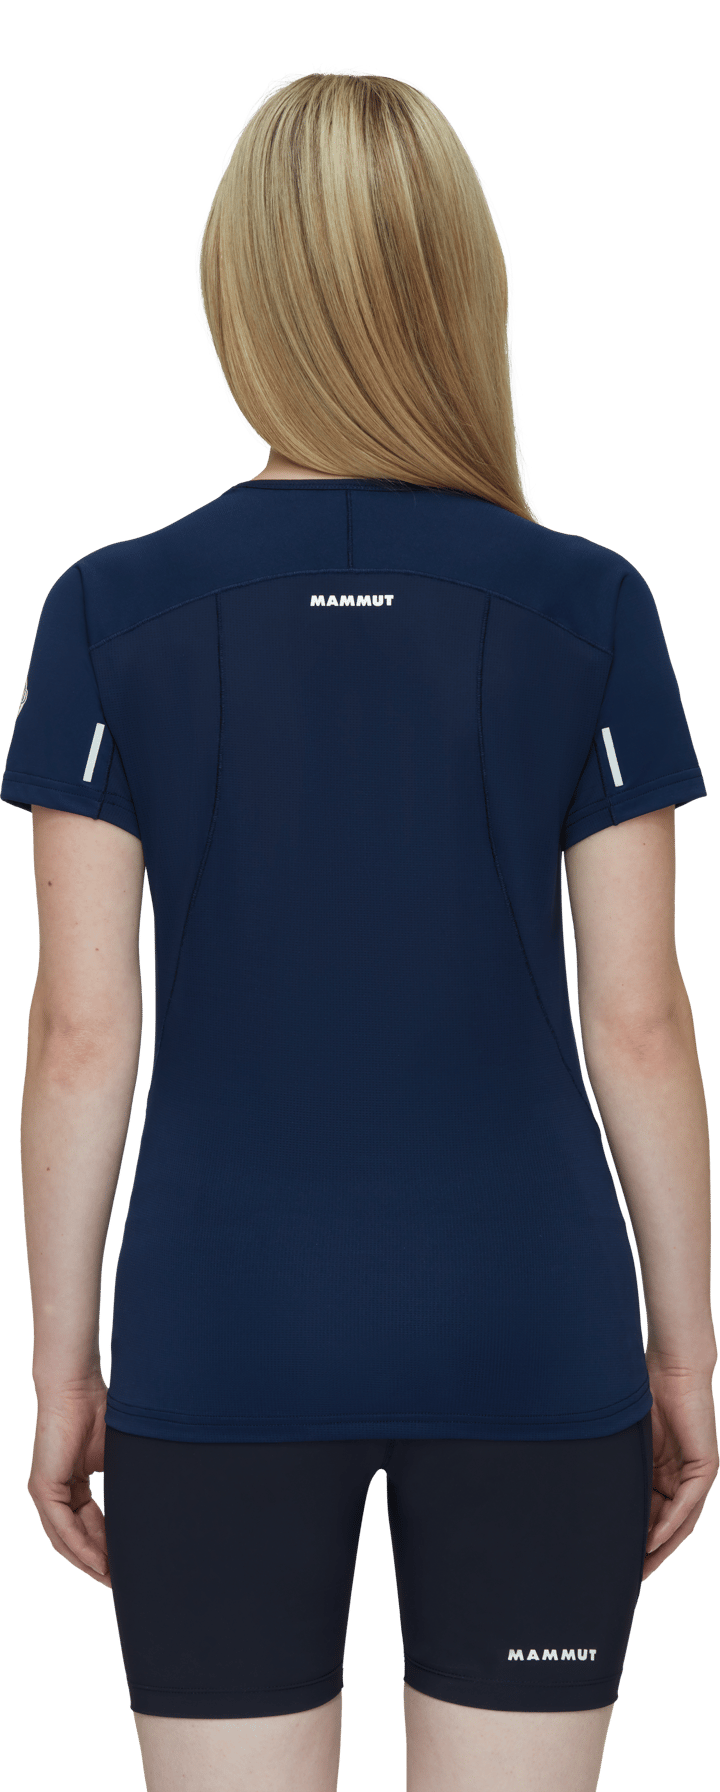 Mammut Women's Aenergy Fl T-Shirt marine Mammut